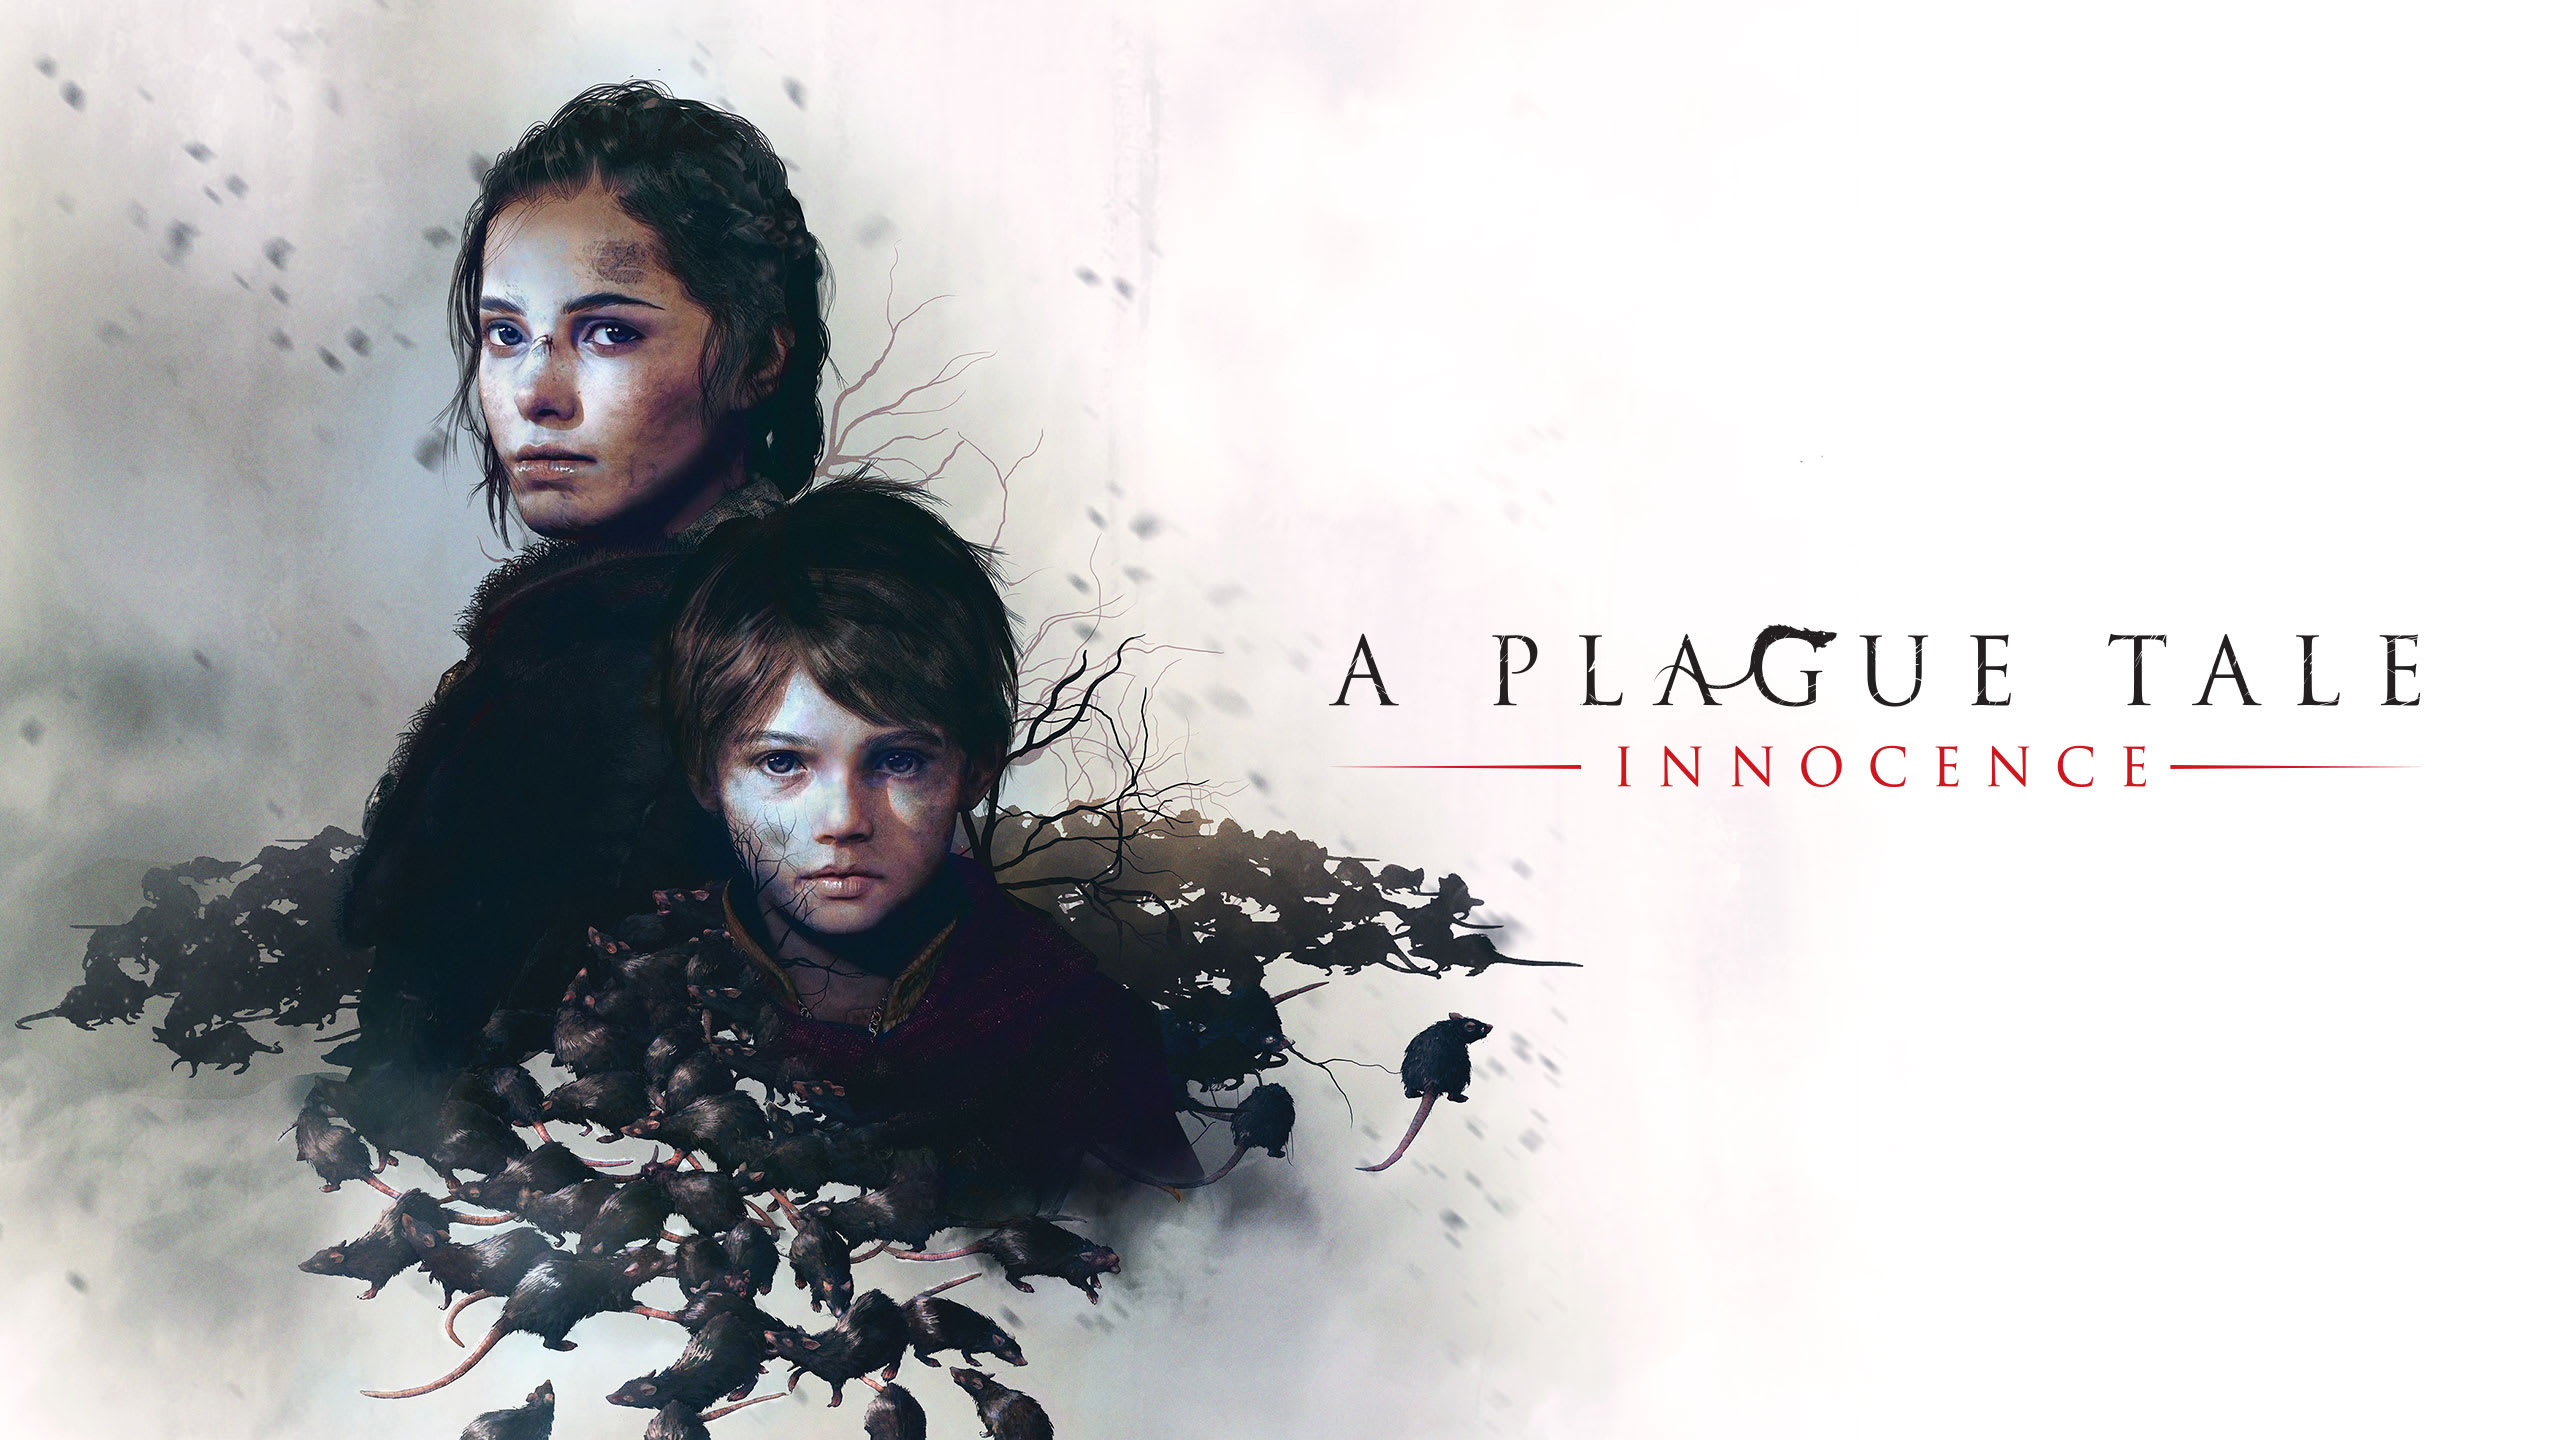 A Plague Tale: Requiem voice actors presented